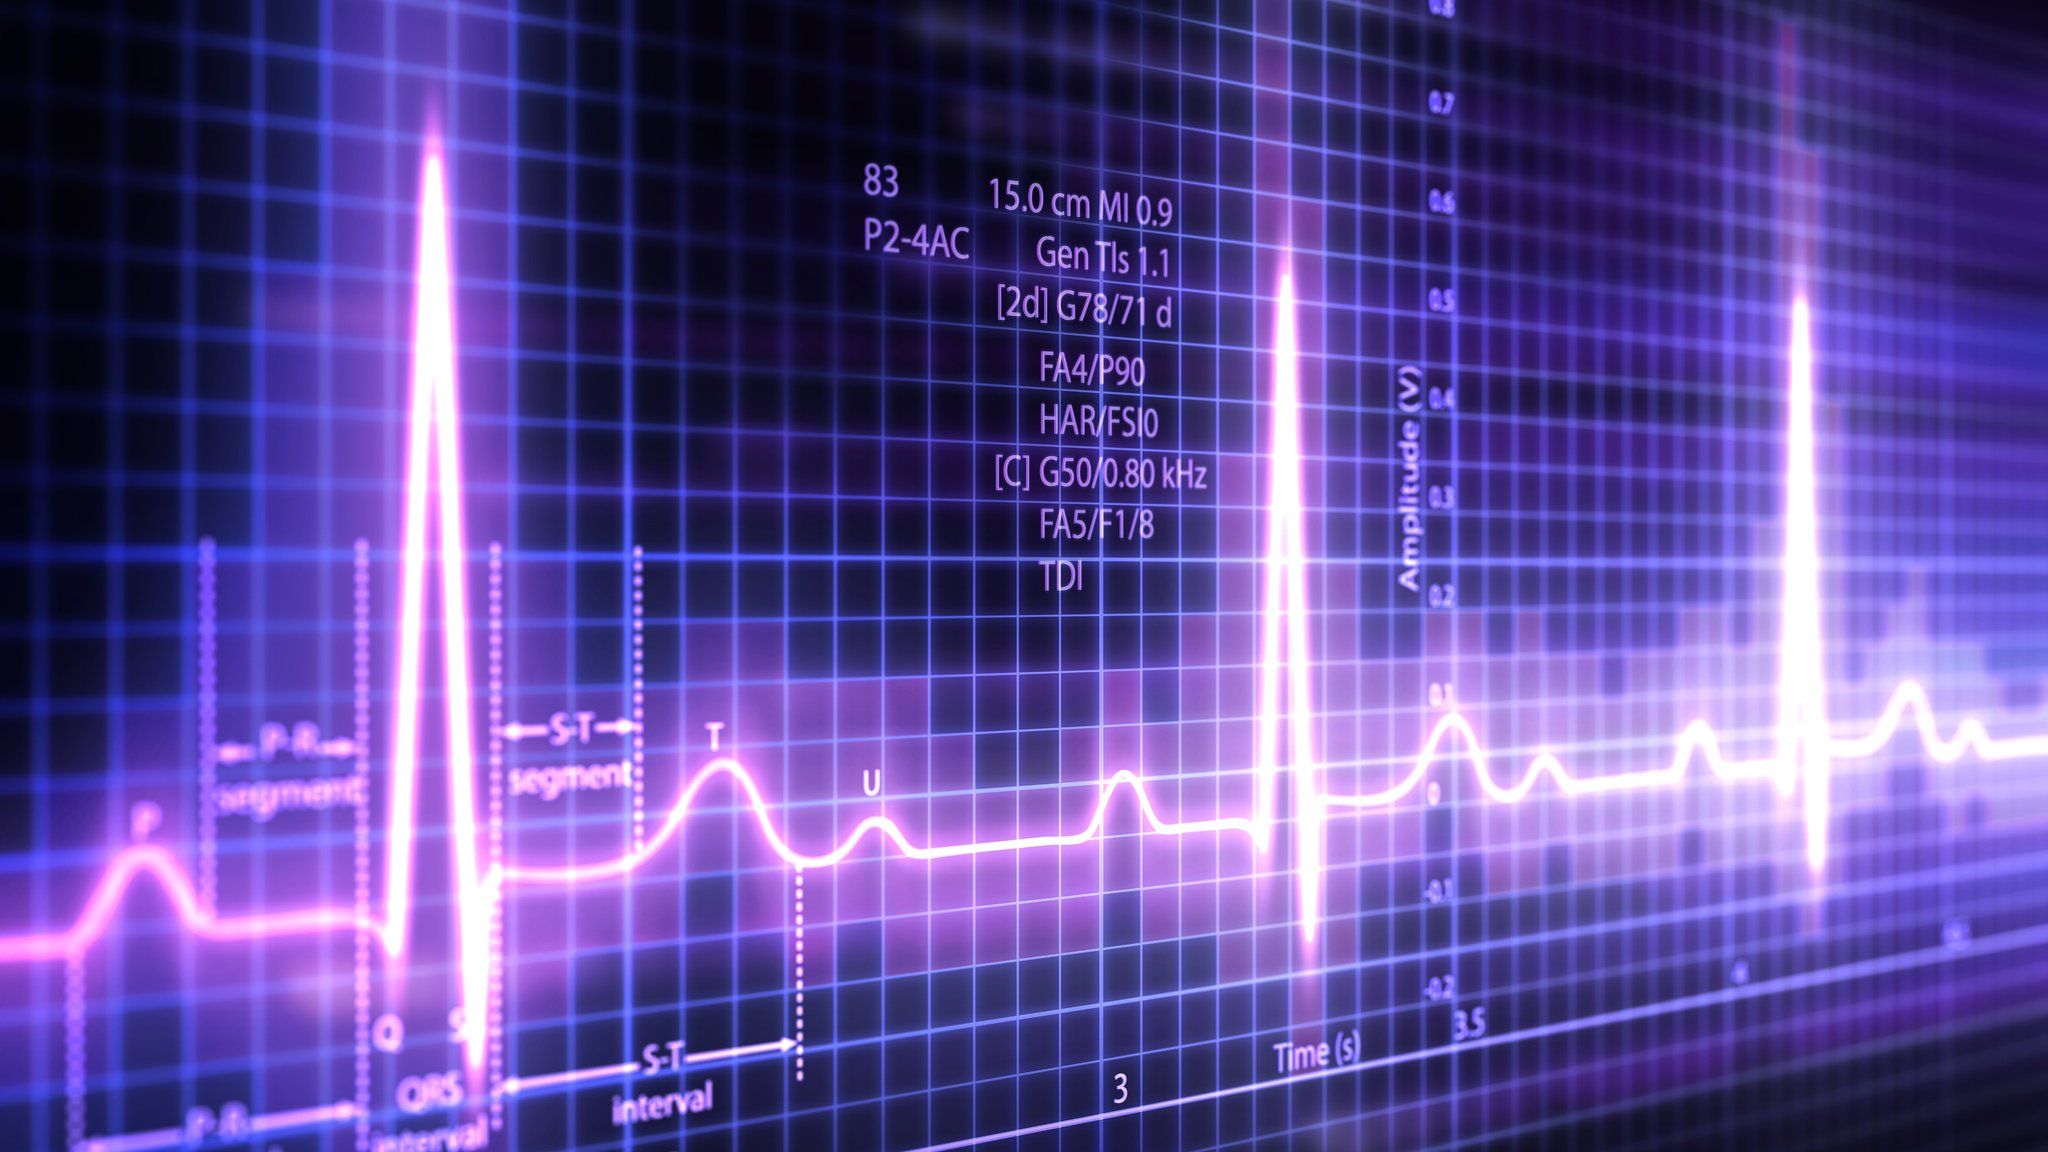 Heartbeat monitor